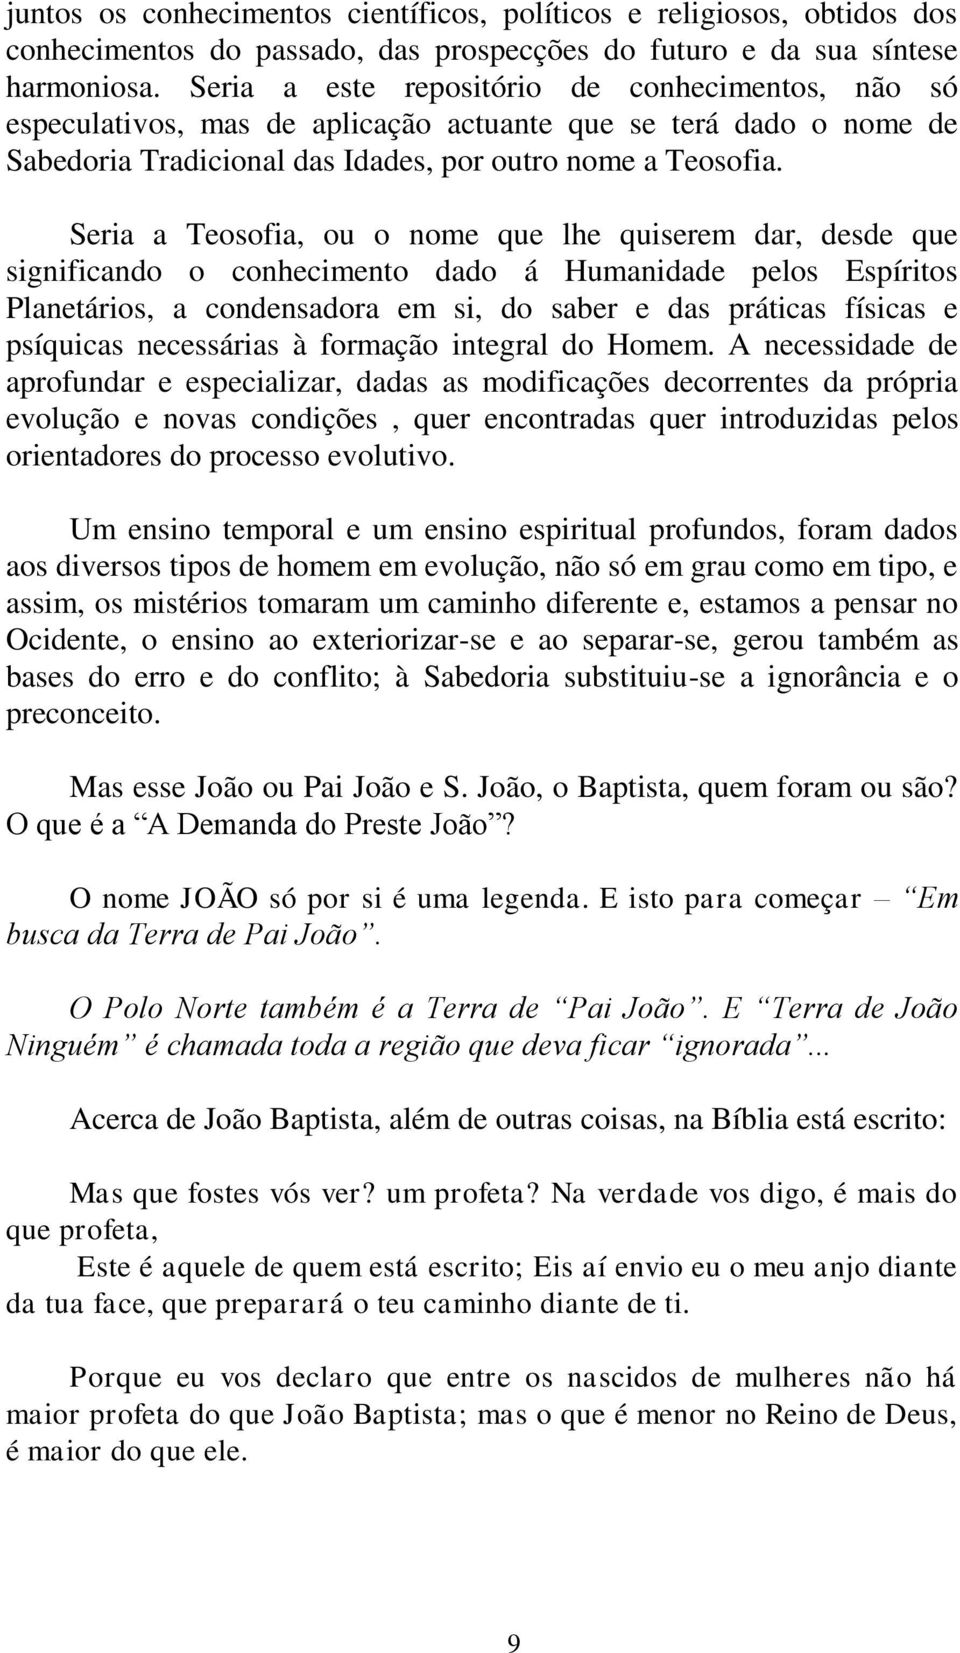 COMUNIDADE PORTUGUESA DE EUBIOSE UMA FILOSOFIA DO SOL. por Jorge Baptista -  PDF Download grátis